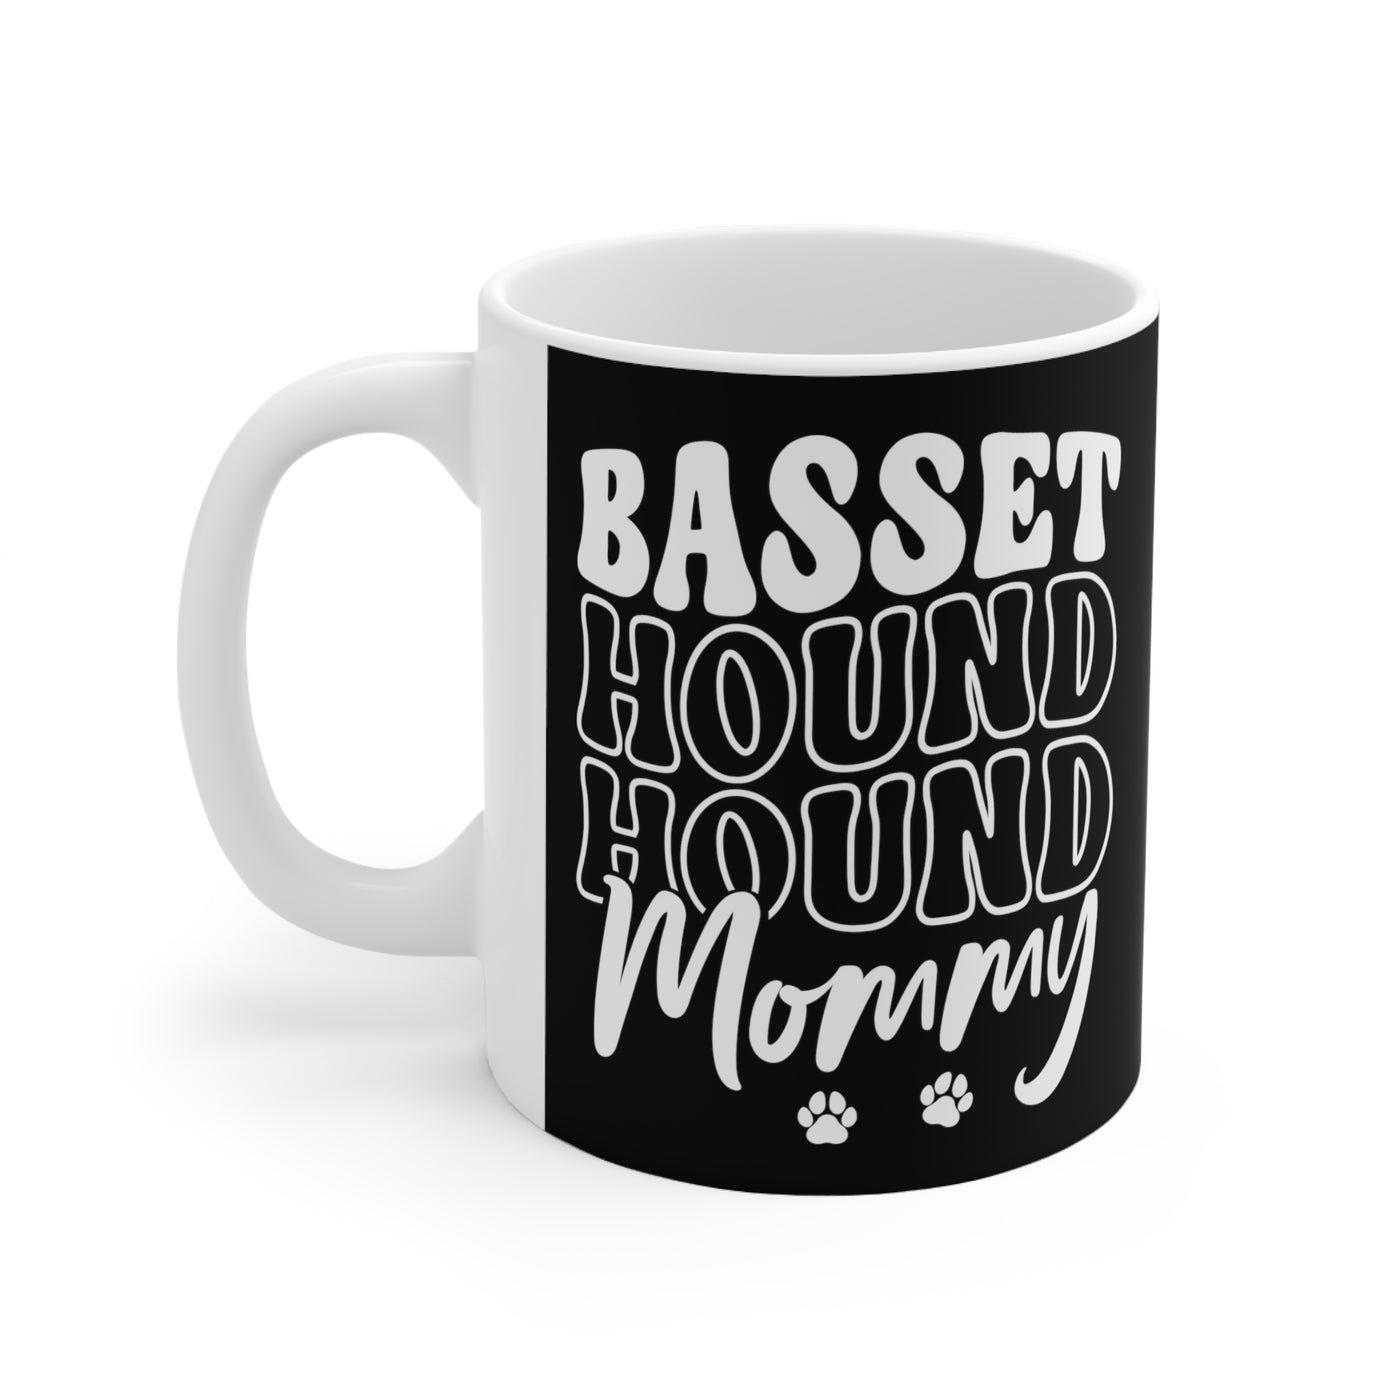 Basset Hound Mommy Ceramic Mug